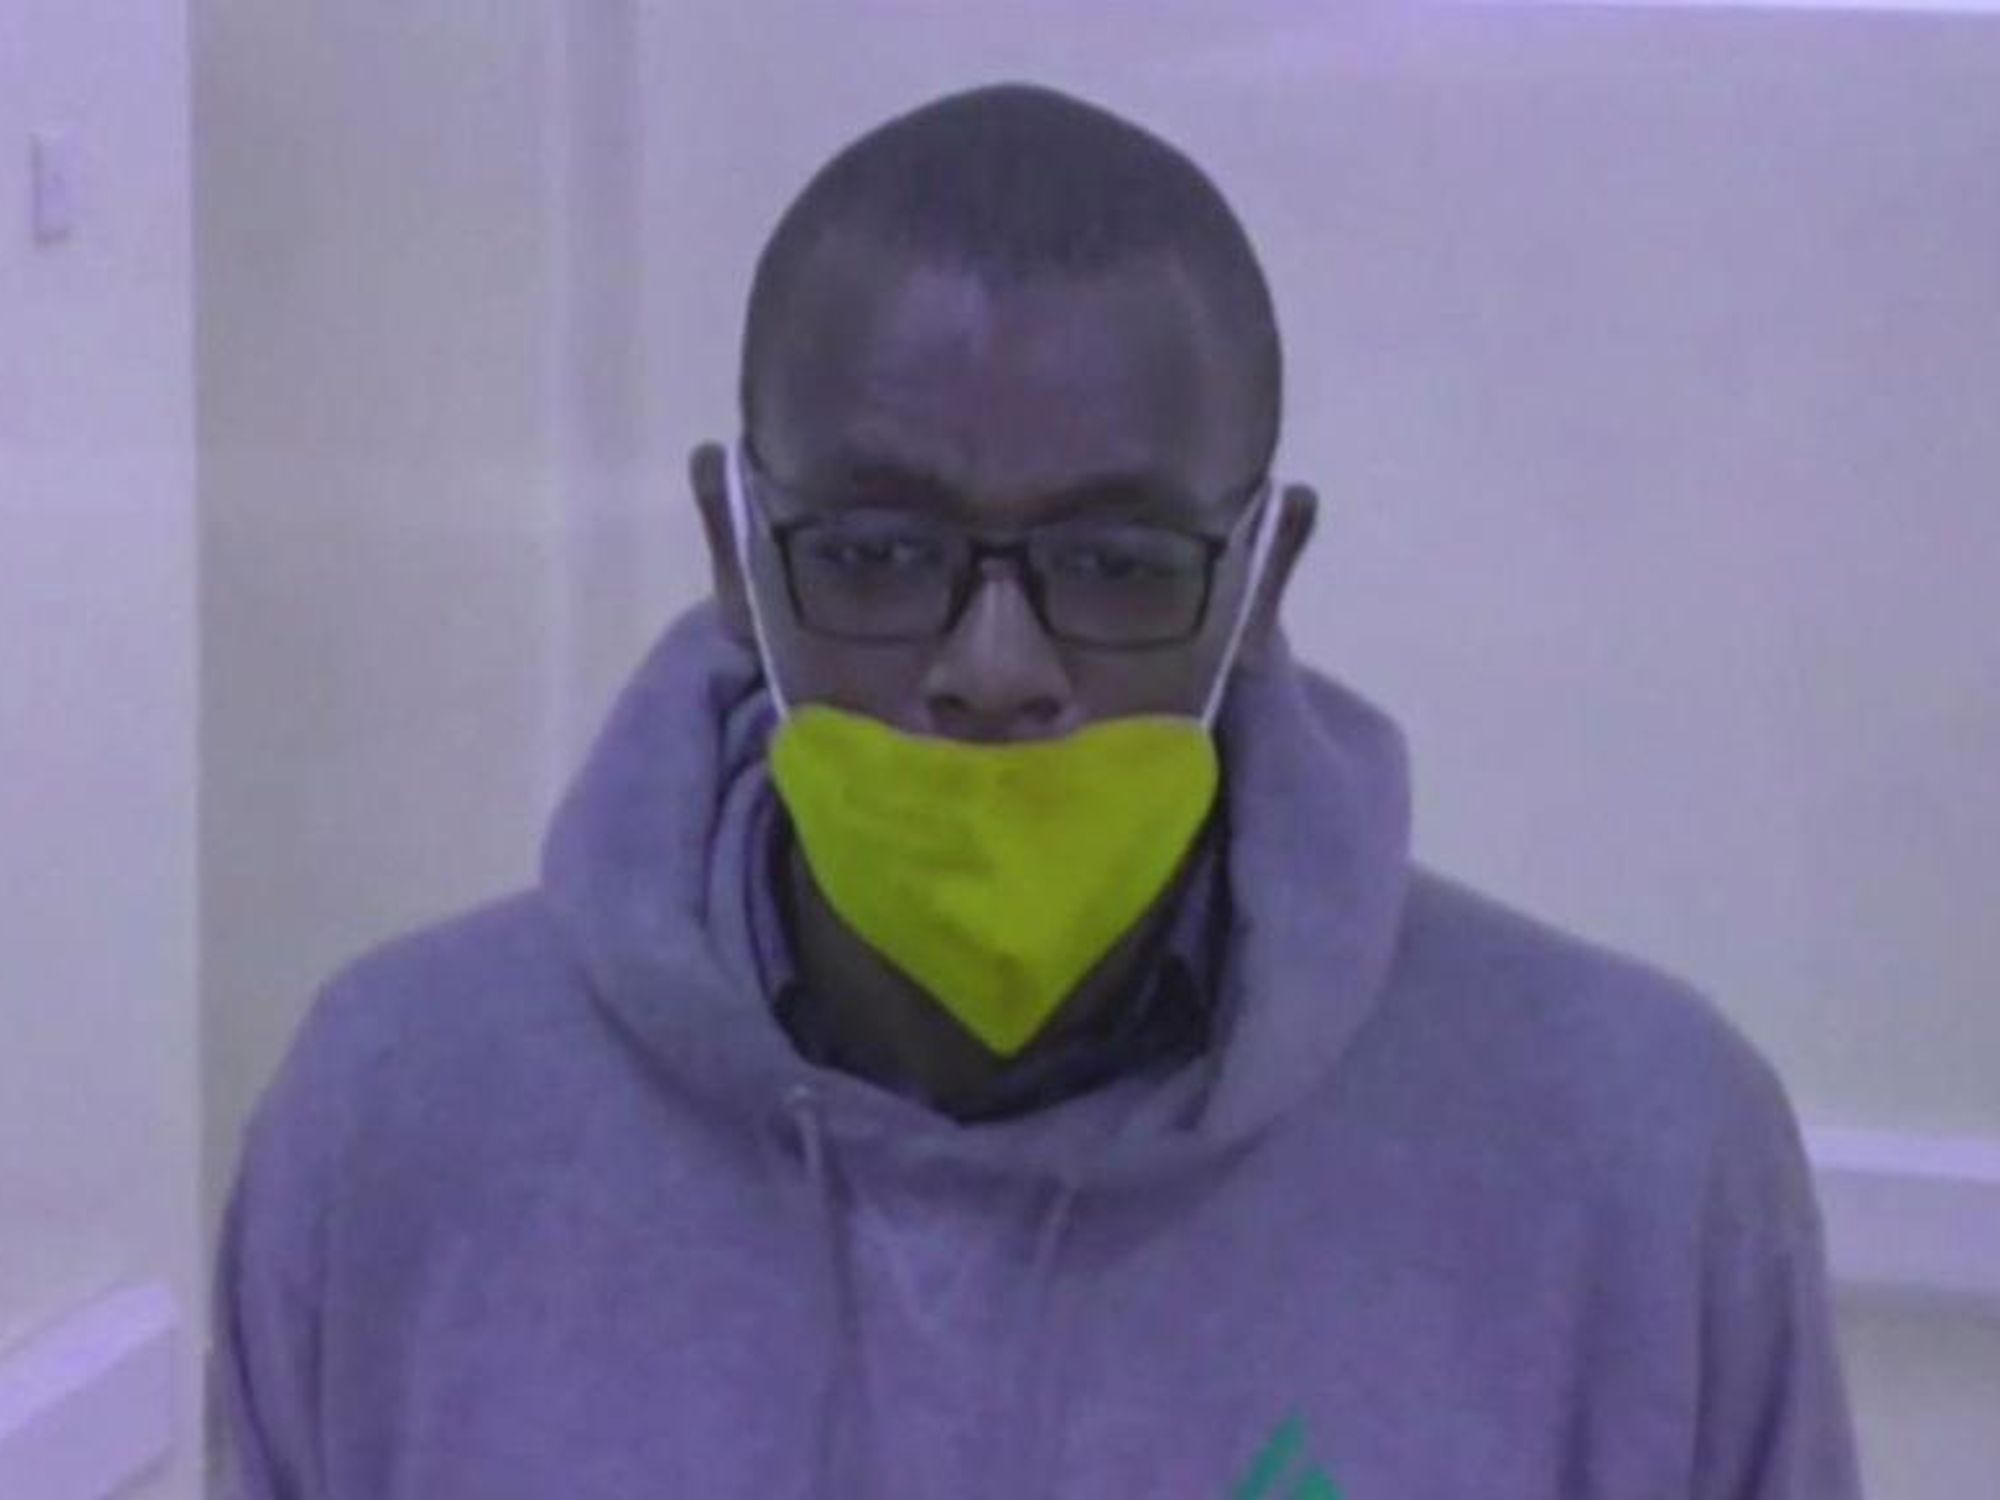 Ugandan author Kakwenza Rukirabashaija during his live video bail hearing - January 2022